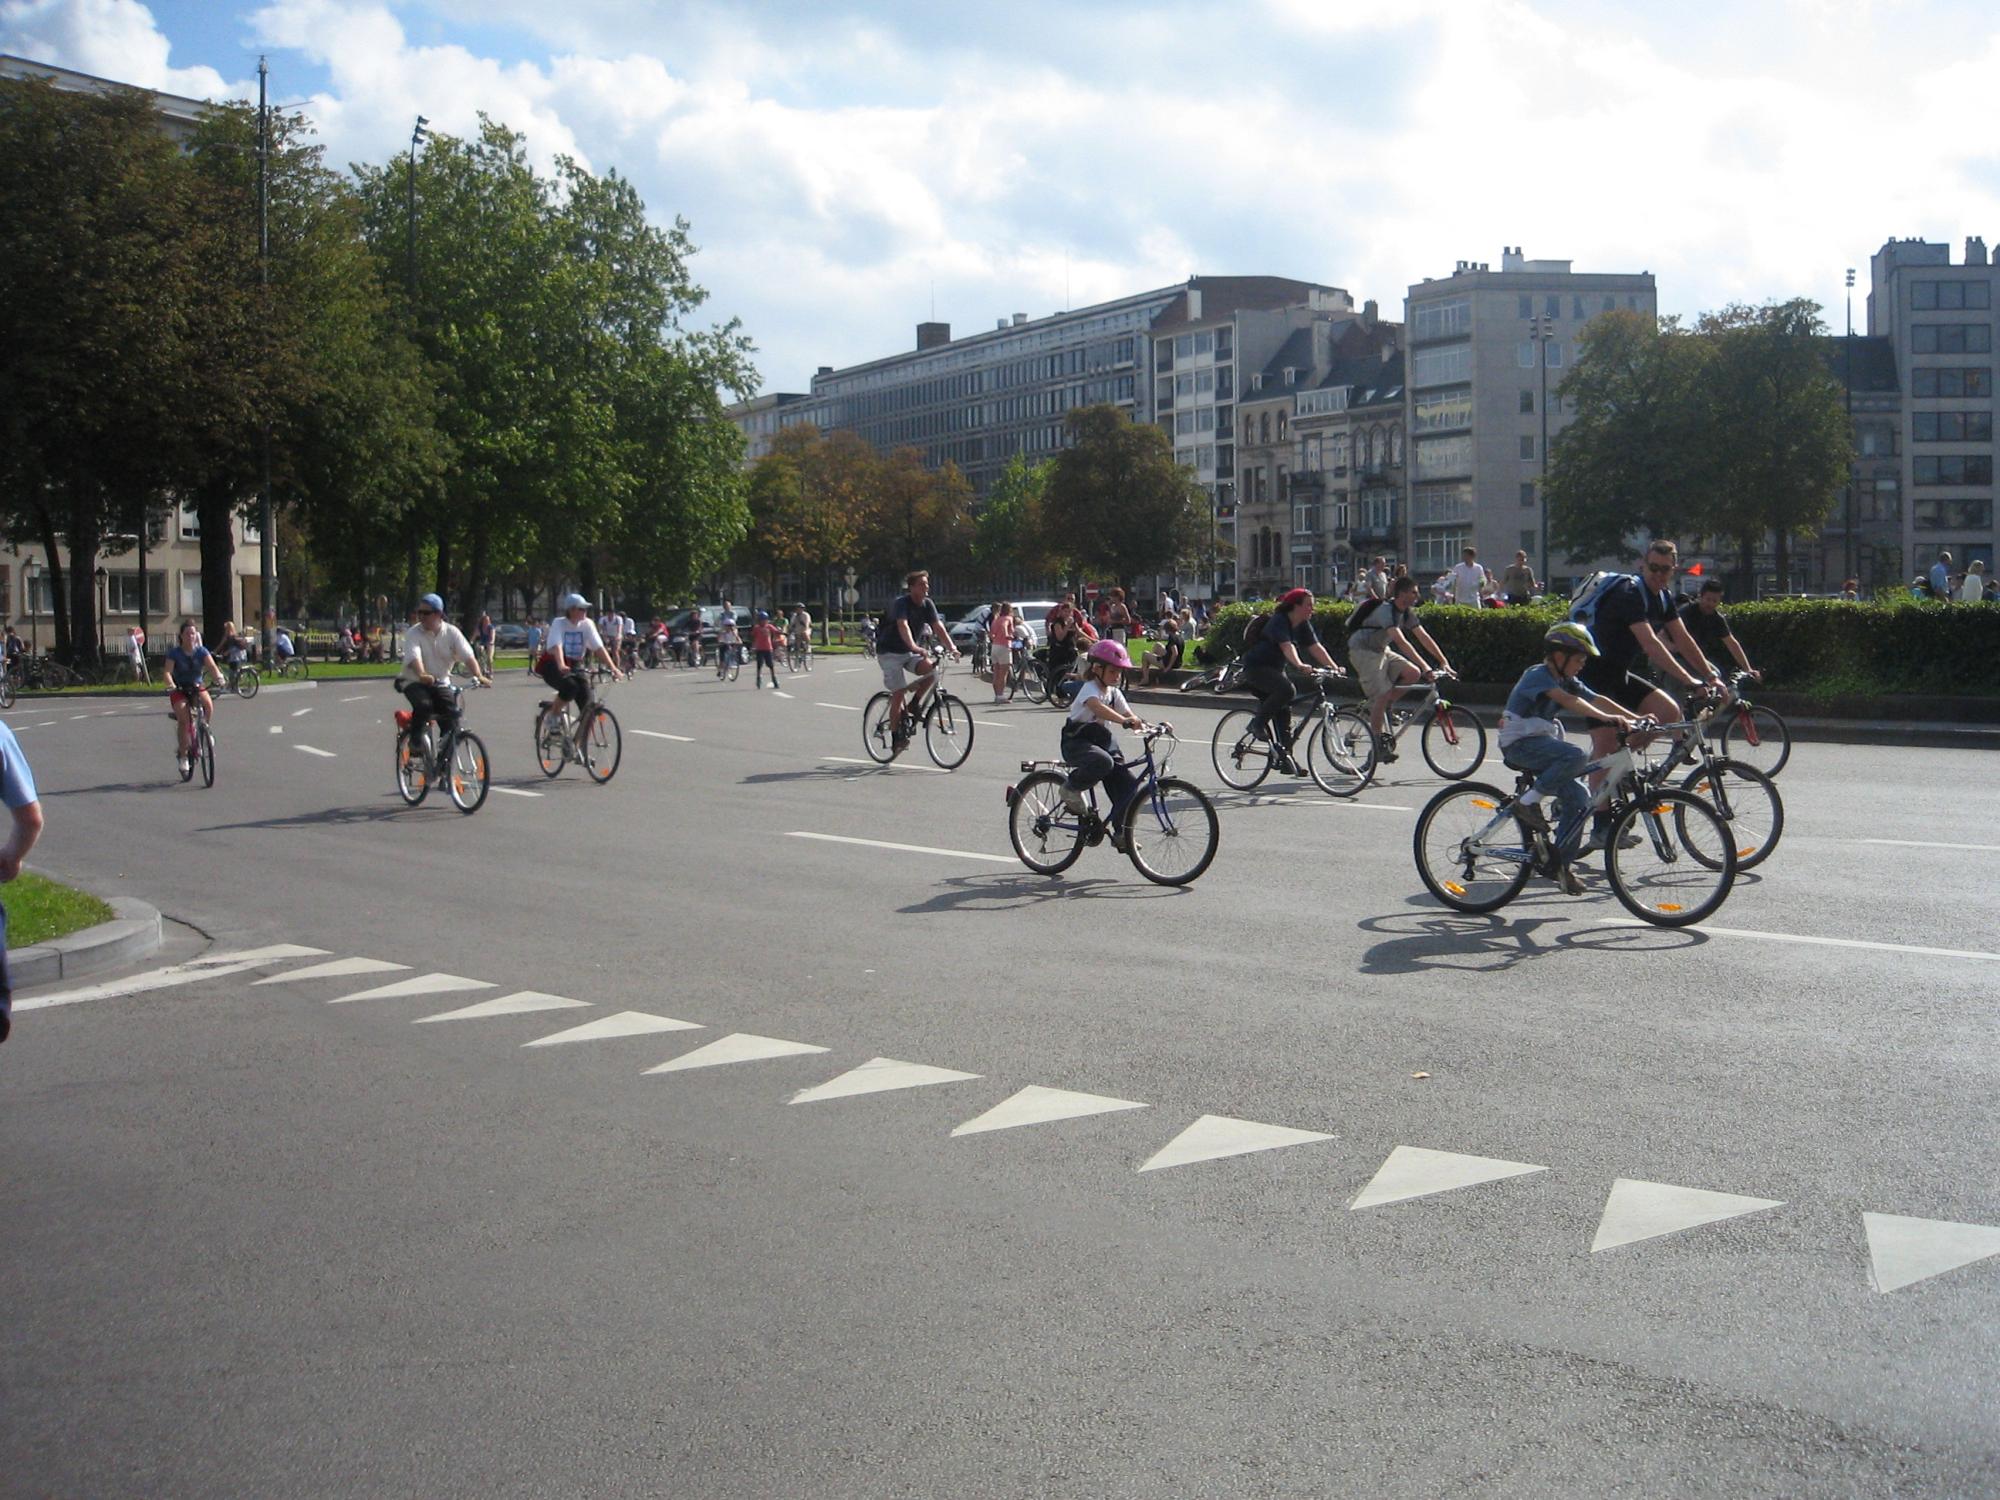 Brussels (2001-2007) - Brussels Bike Day